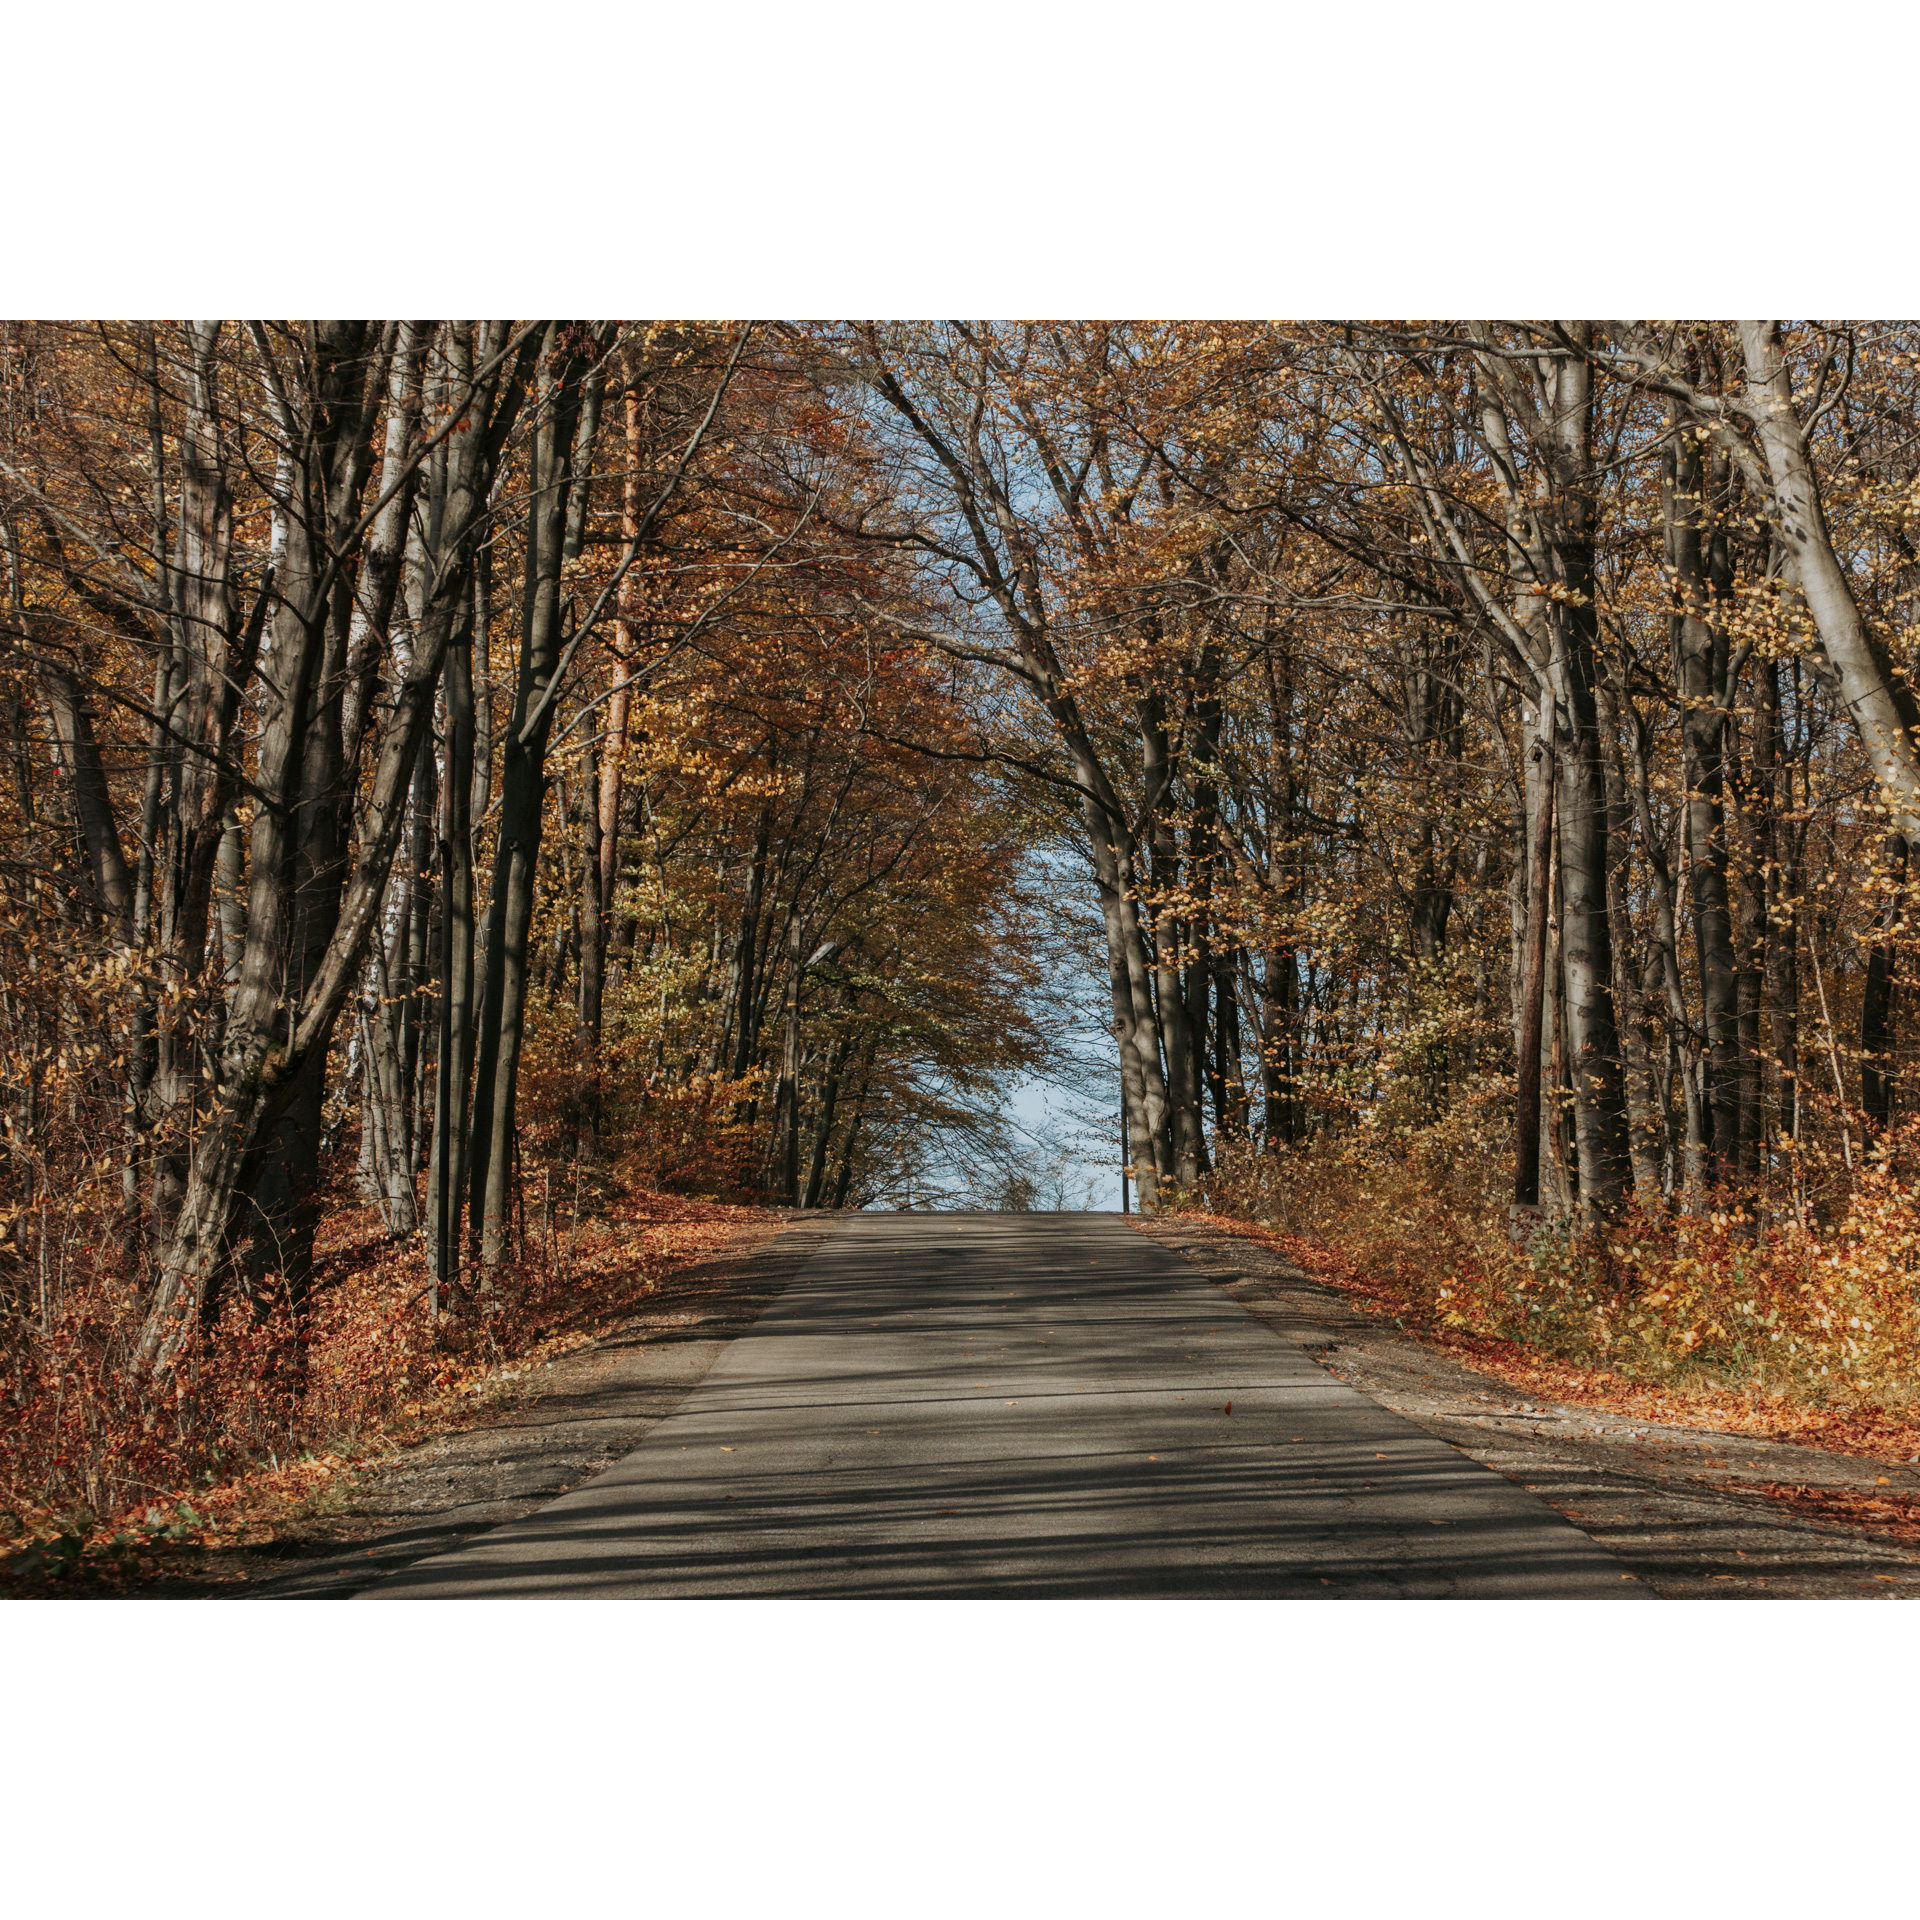 Droga asfaltowa prowadząca na delikatne wzniesienie wśród jesiennych drzew z pomarańczowymi liśćmi 